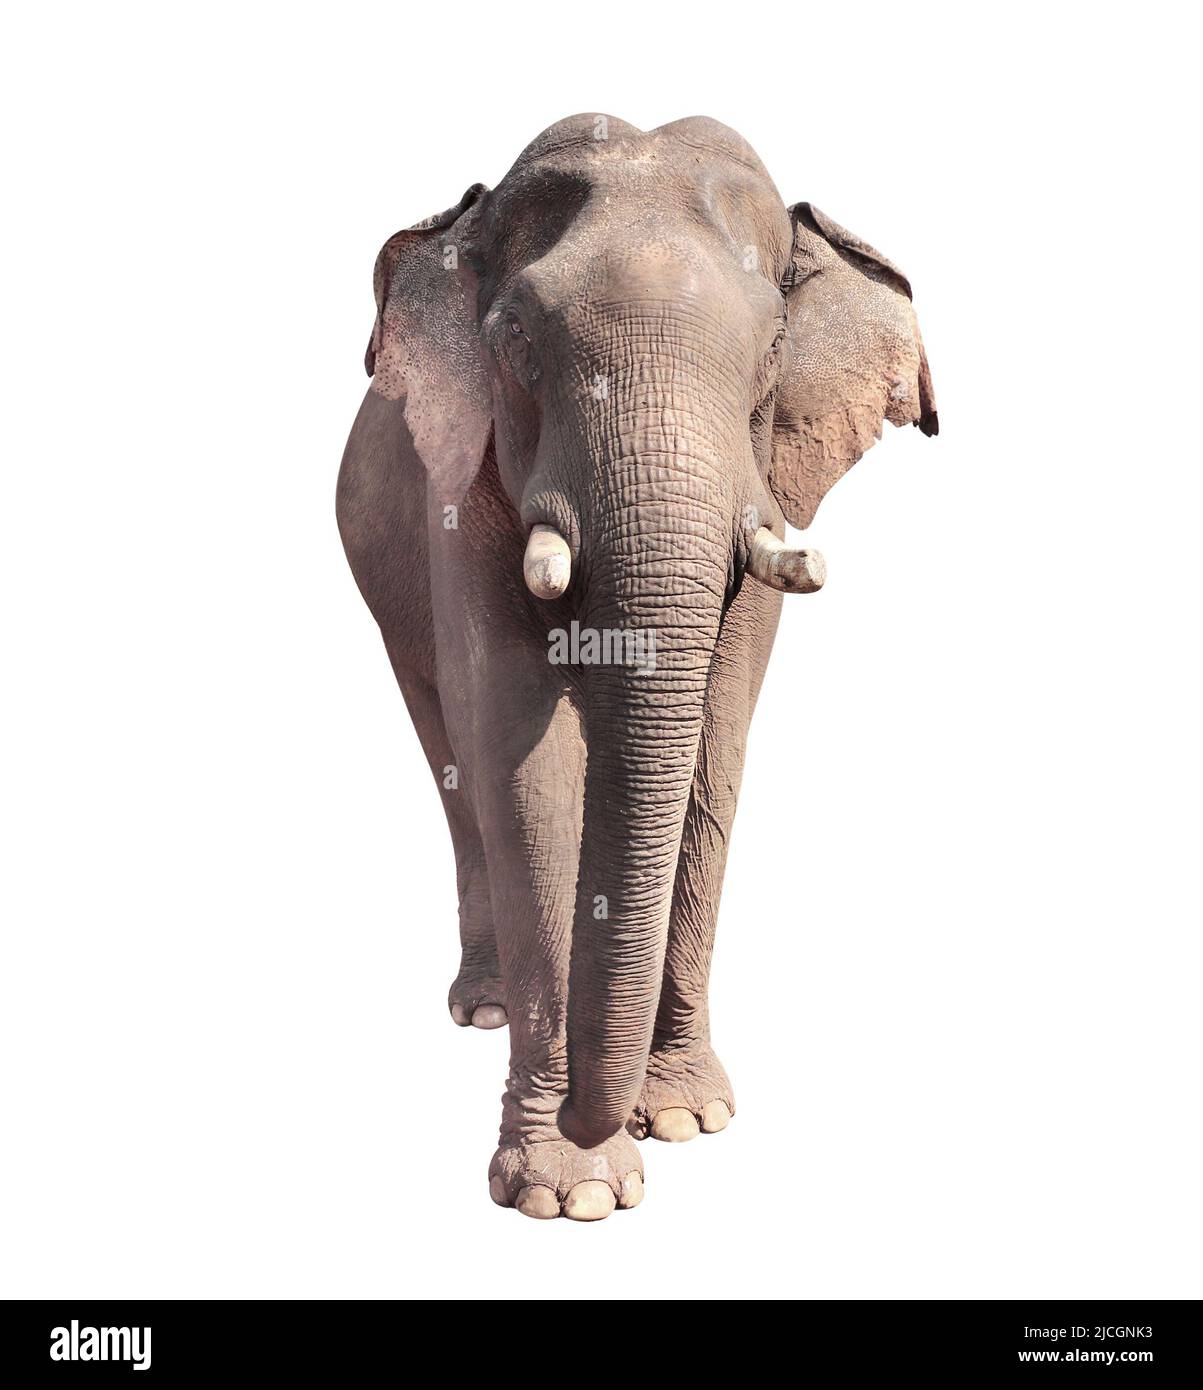 Éléphant de marche (Elepha maximus). Isolé sur fond blanc Banque D'Images